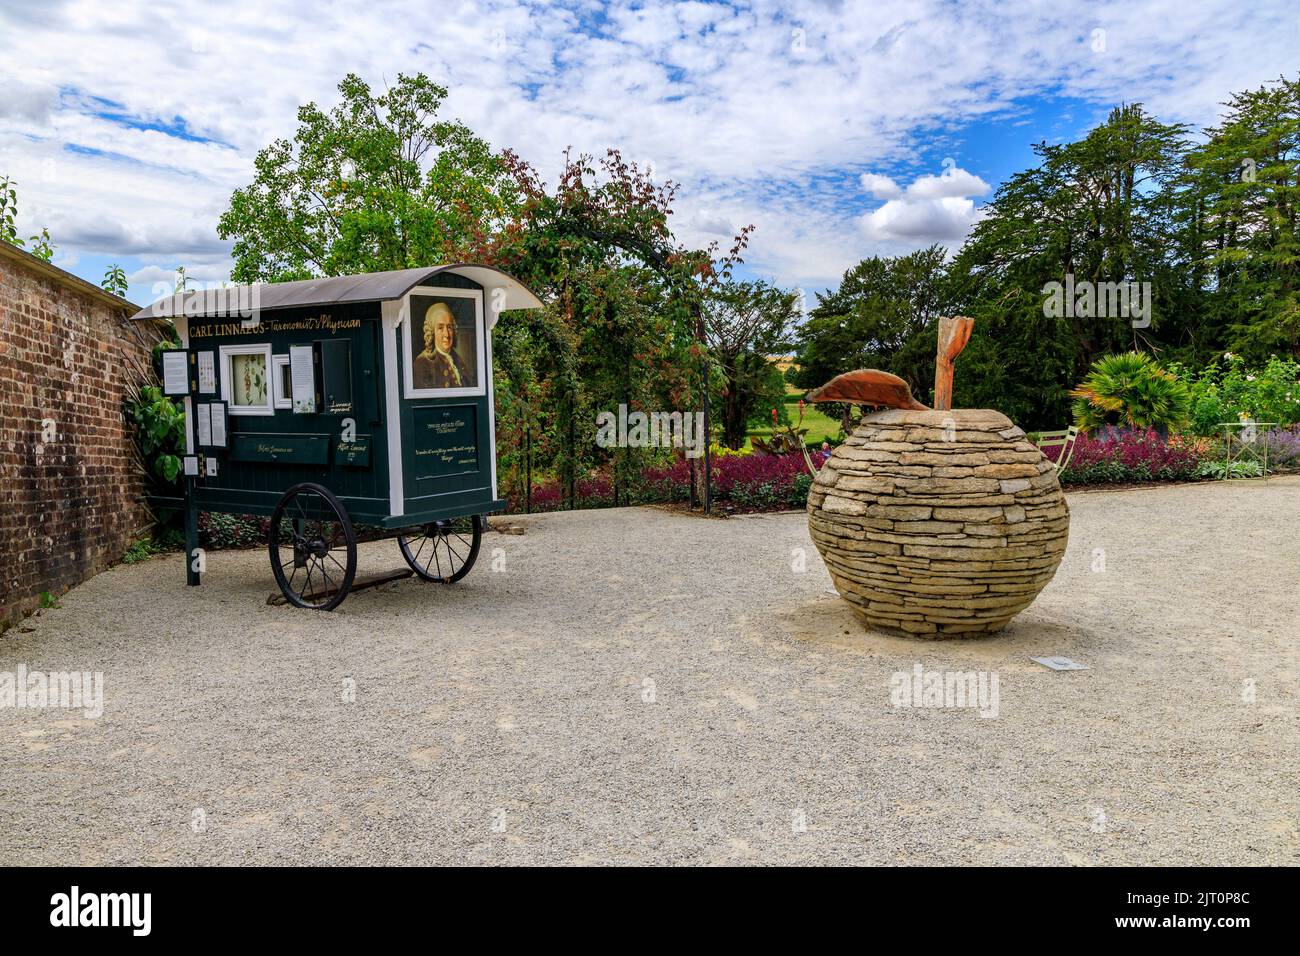 Ein Stein-Apfel-Kunstwerk und ein mobiler Carl Linnäus (schwedischer Botaniker und Taxonom) sind im Garten „The Newt in Somerset“, bei Bruton, England, Großbritannien, ausgestellt Stockfoto